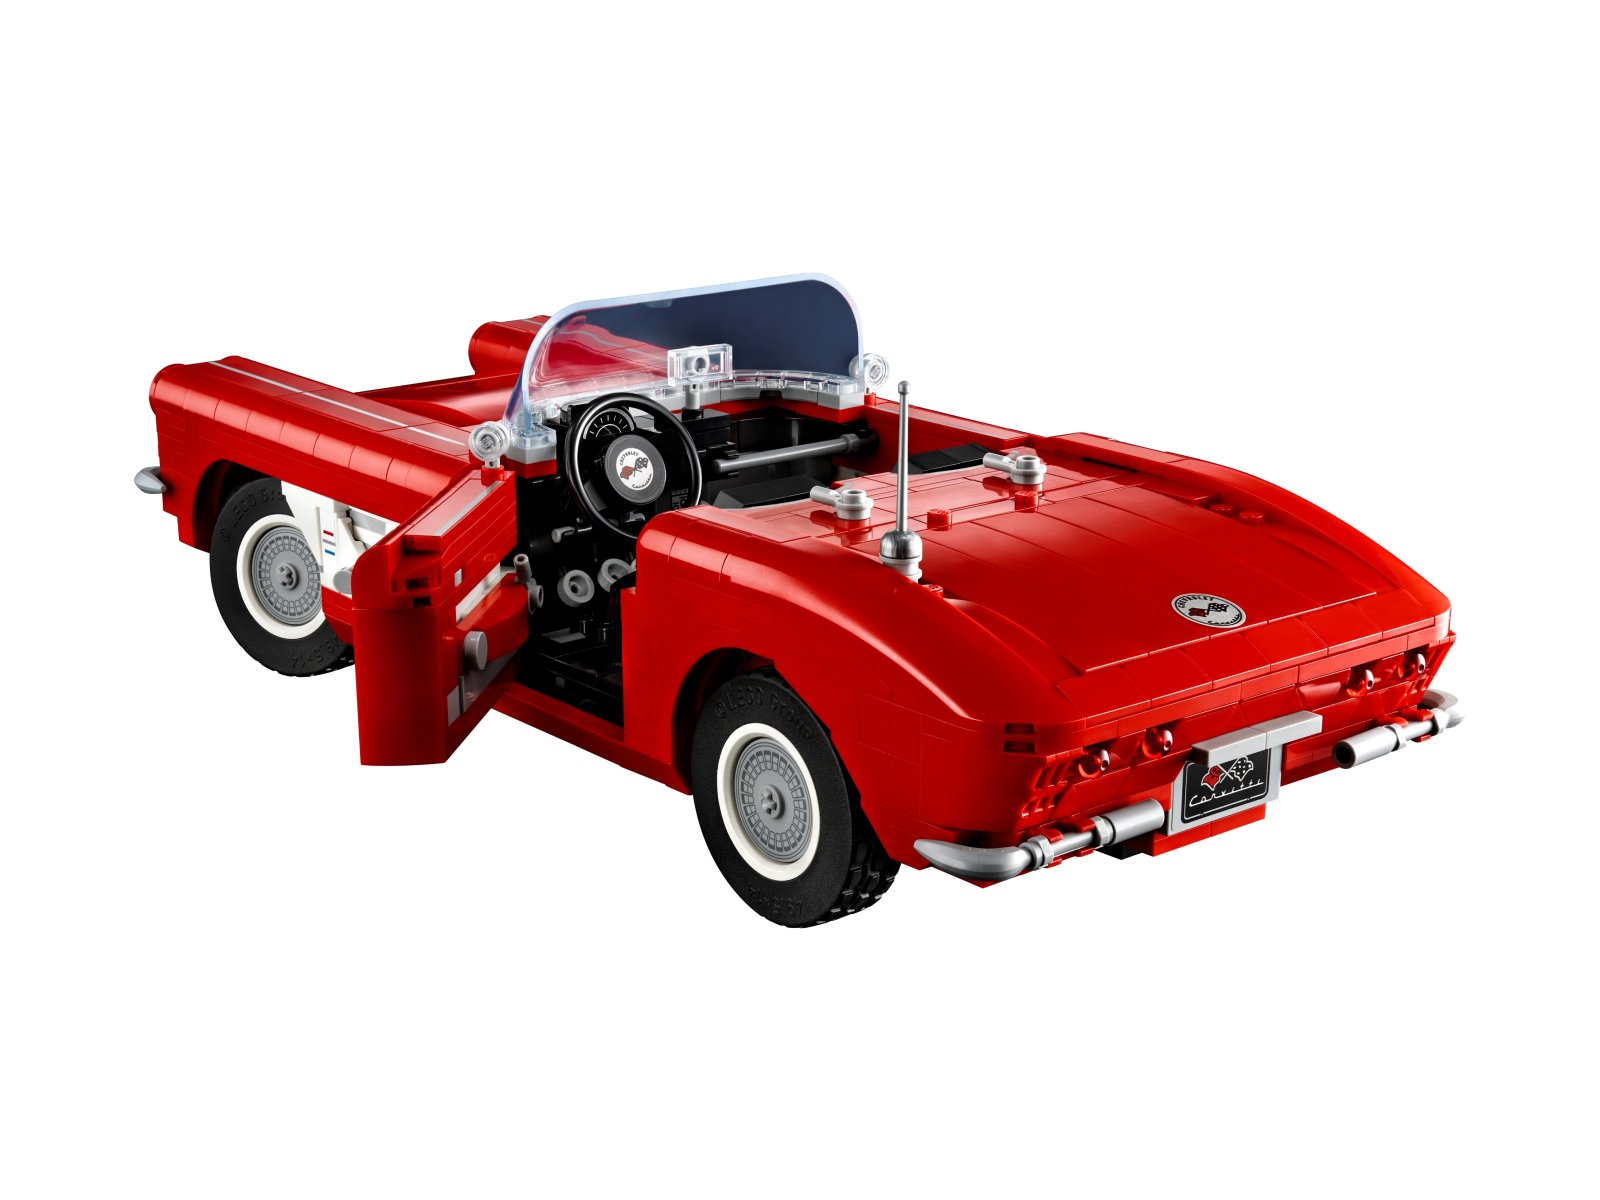 LEGO ICONS 10321 Corvette